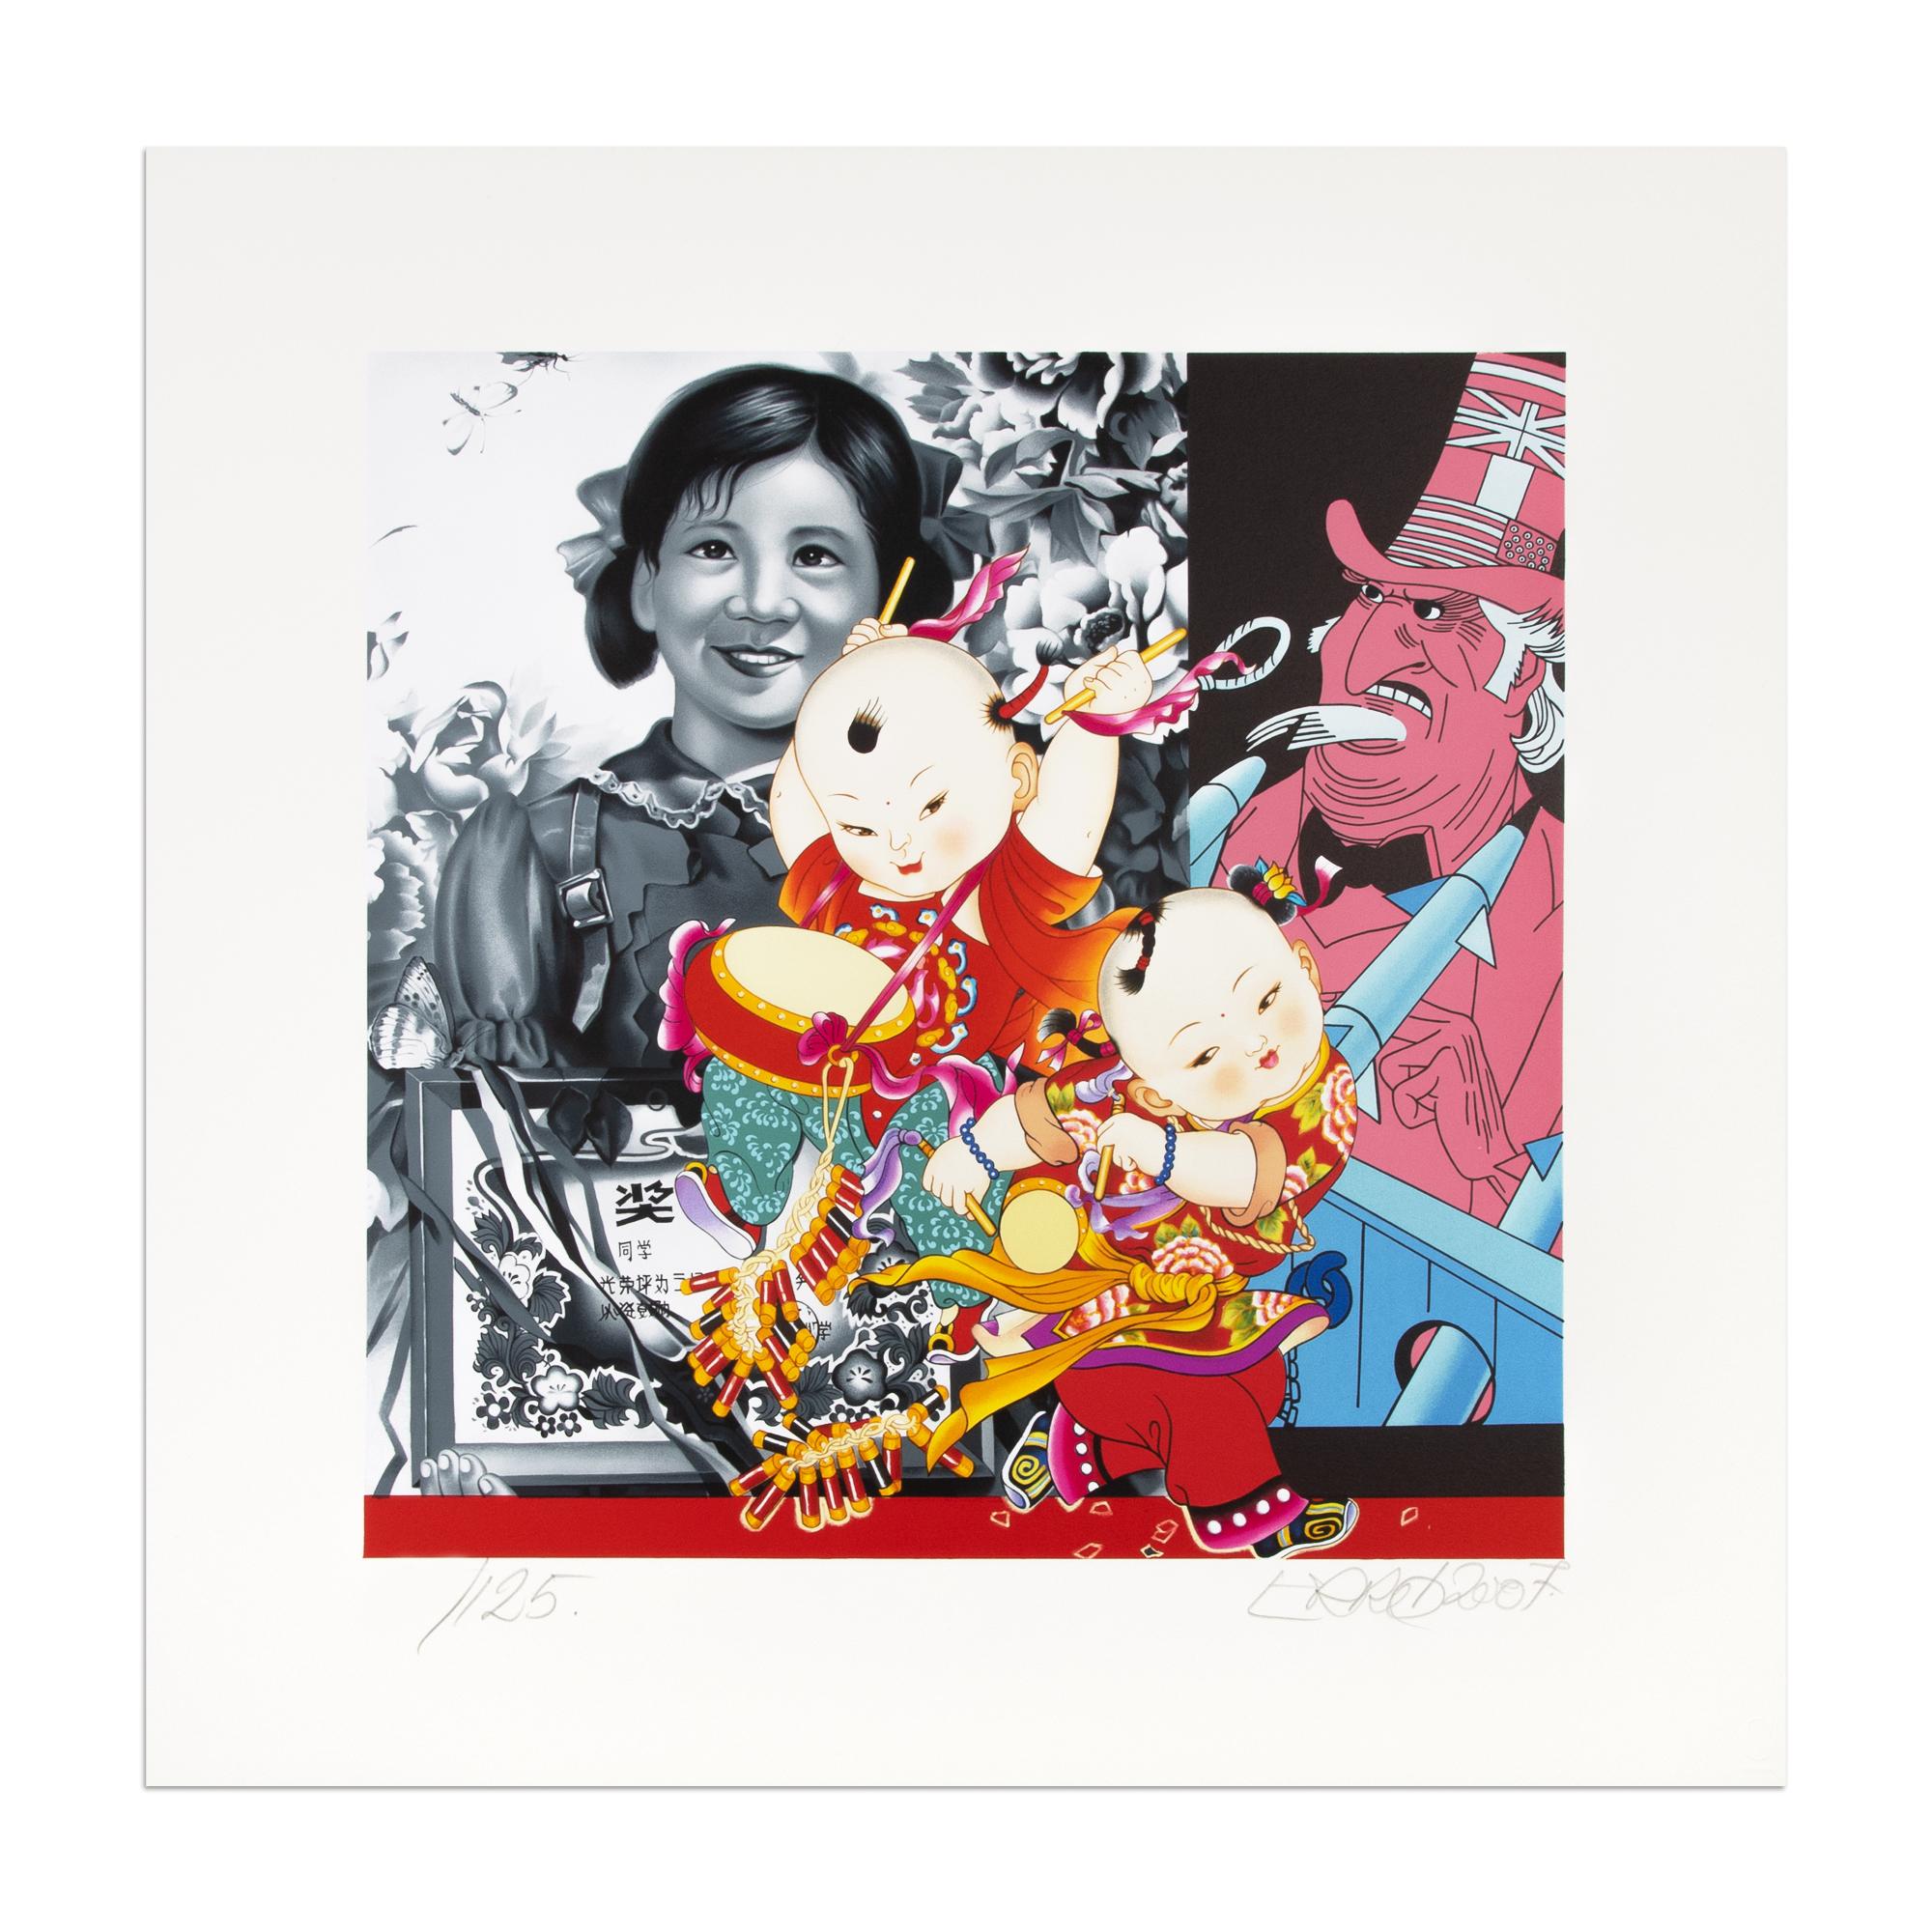 Erró (geboren 1932 in Island)
Les grands enfants de Mao (Die Enkelkinder von Mao), 2007
Medium: Farblithographie
Abmessungen: 55 x 55 cm
Auflage von 125: Hans signiert und nummeriert
Zustand: Neuwertig

"Ich würde gerne als Post-Pop-Künstler gelten,